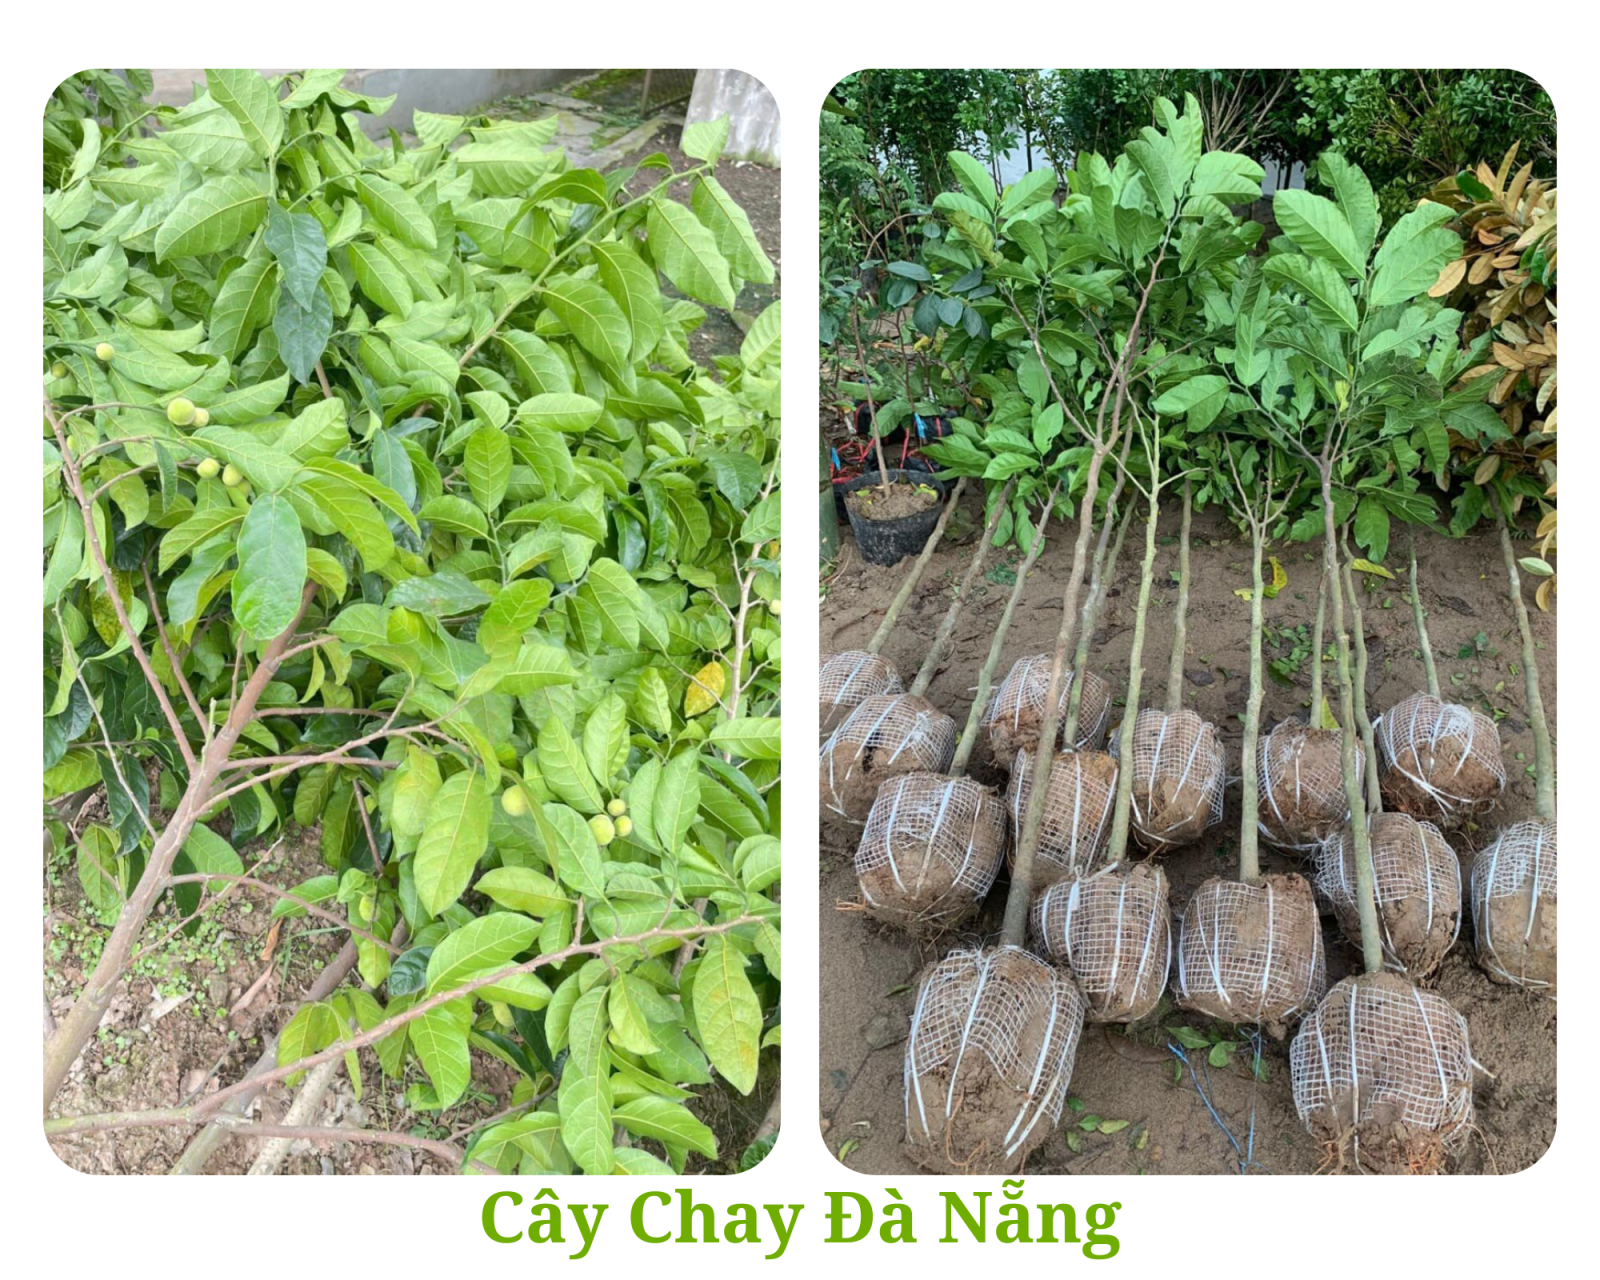 CÂY CHAY cao 3m Bán cây chay- hướng dẫn trồng và chăm sóc cây chay Đà Nẵng